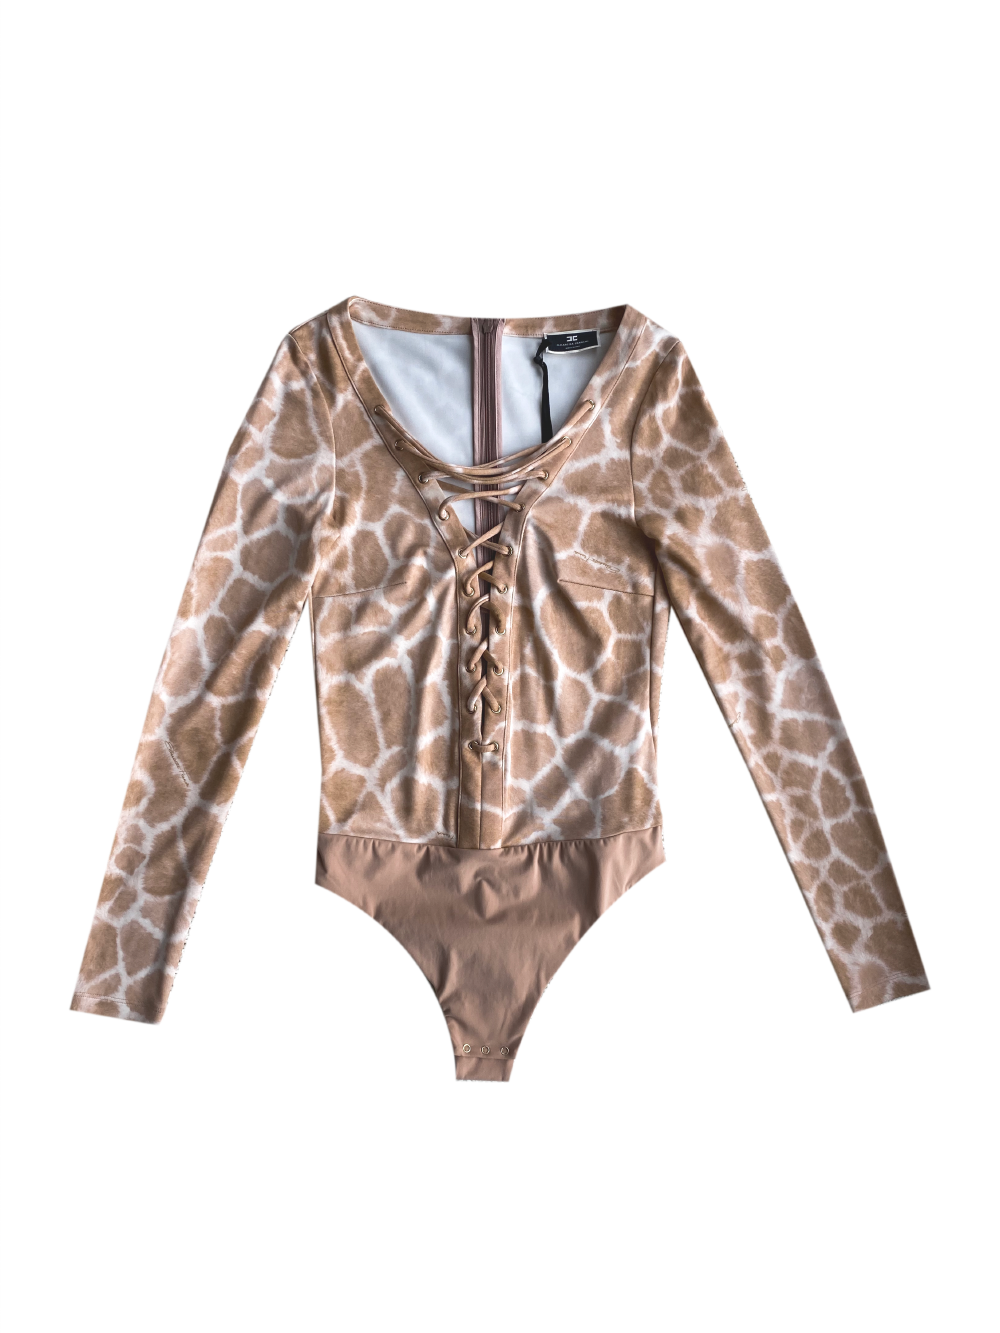 ELISABETTA FRANCHI nude long sleeve lace up leopard print bodysuit  M